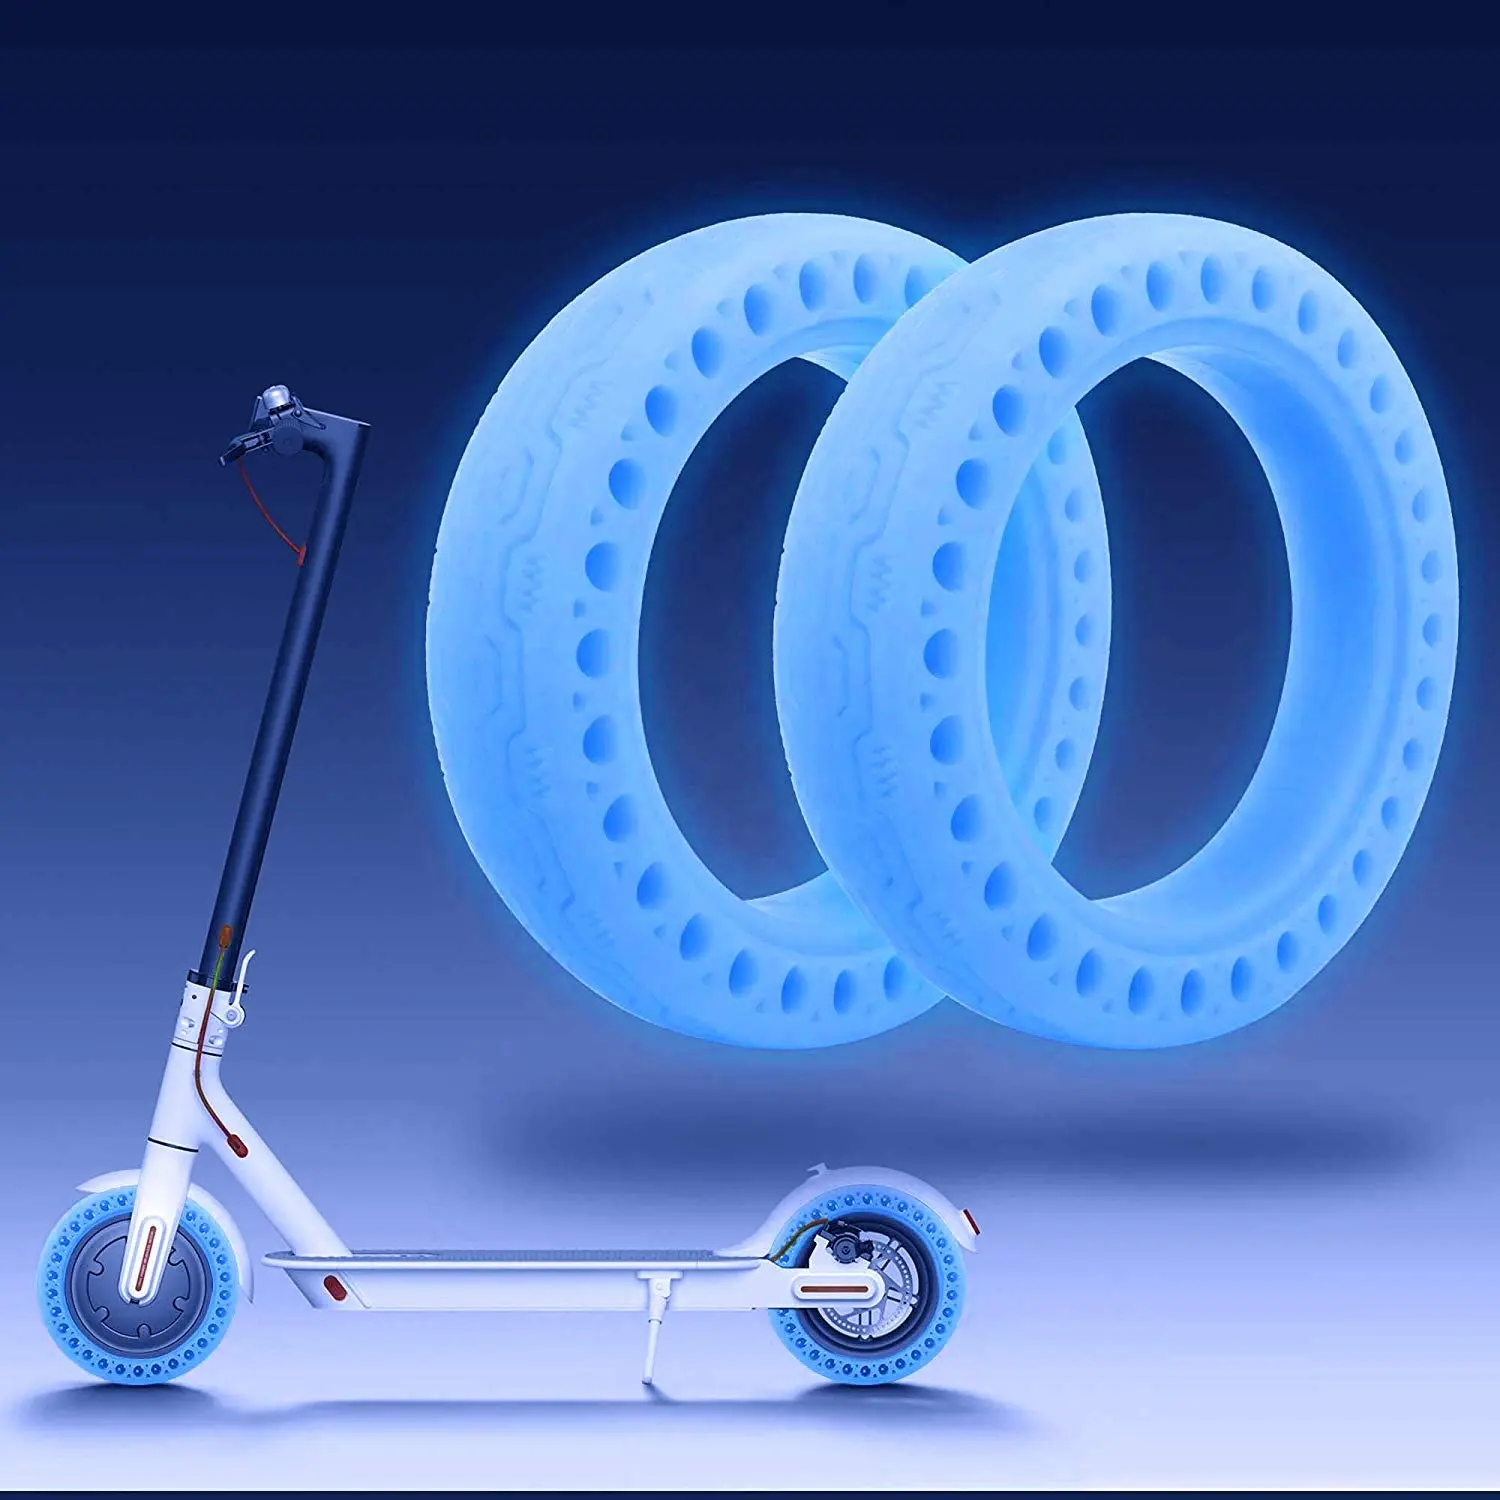 Pneus fluorescentes para m365 scooter luminosos, amortecimento de choque, rodas de borracha, azul e fluorescente